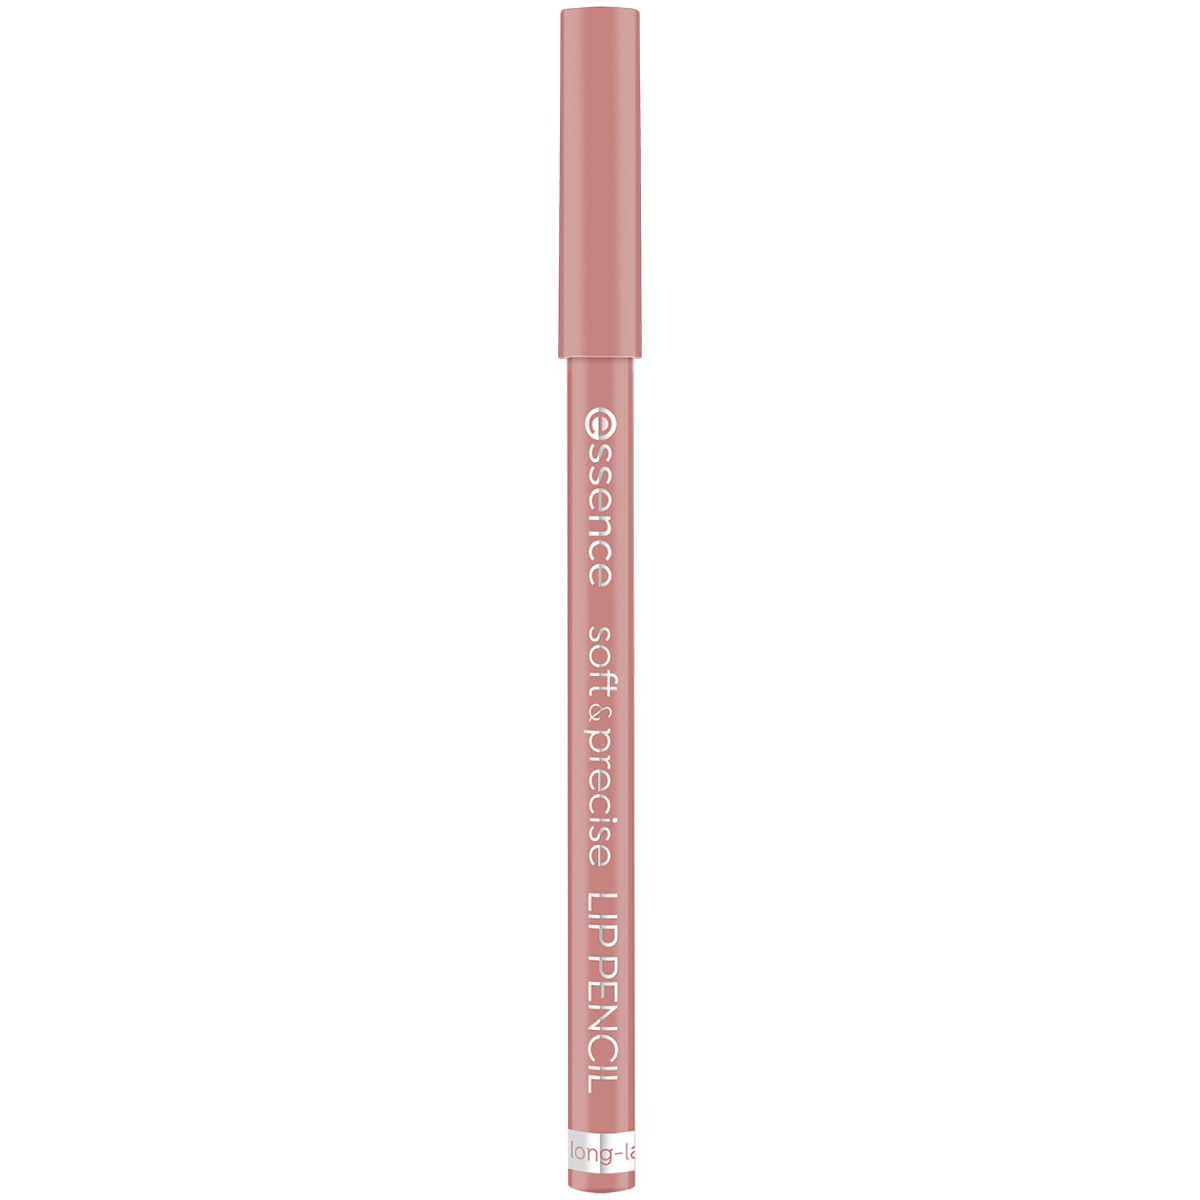 Creion pentru buze Soft & Precise Lip Pencil 302 - Heavenly, 0.78g, Essence